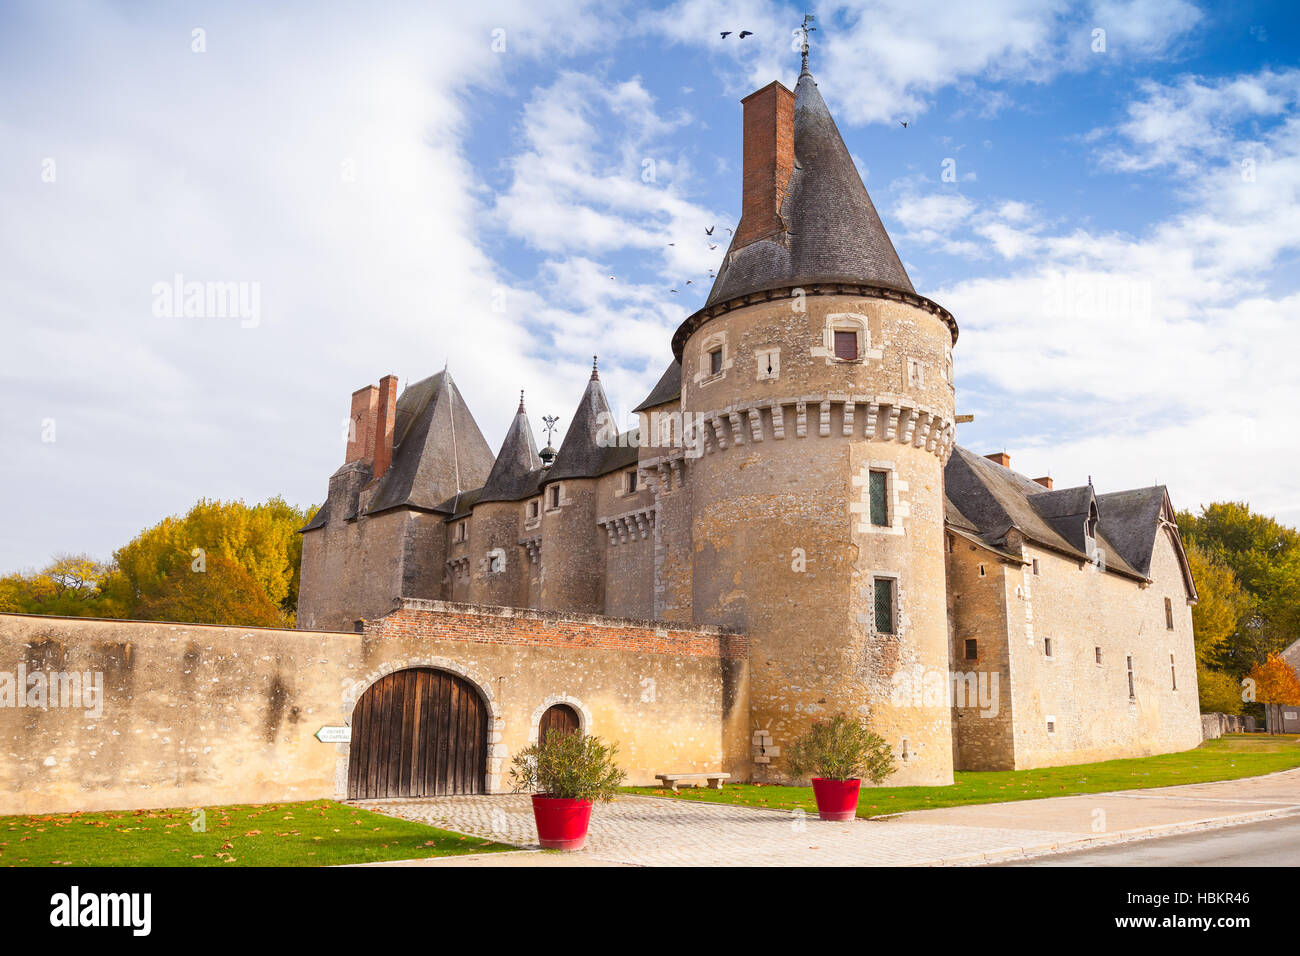 Fougeres-sur-Bievre, Francia - 6 Novembre 2016: facciata di Chateau de Fougeres-sur-Bievre, medievale castello francese nella Valle della Loira. È stato costruito nel 15 c Foto Stock